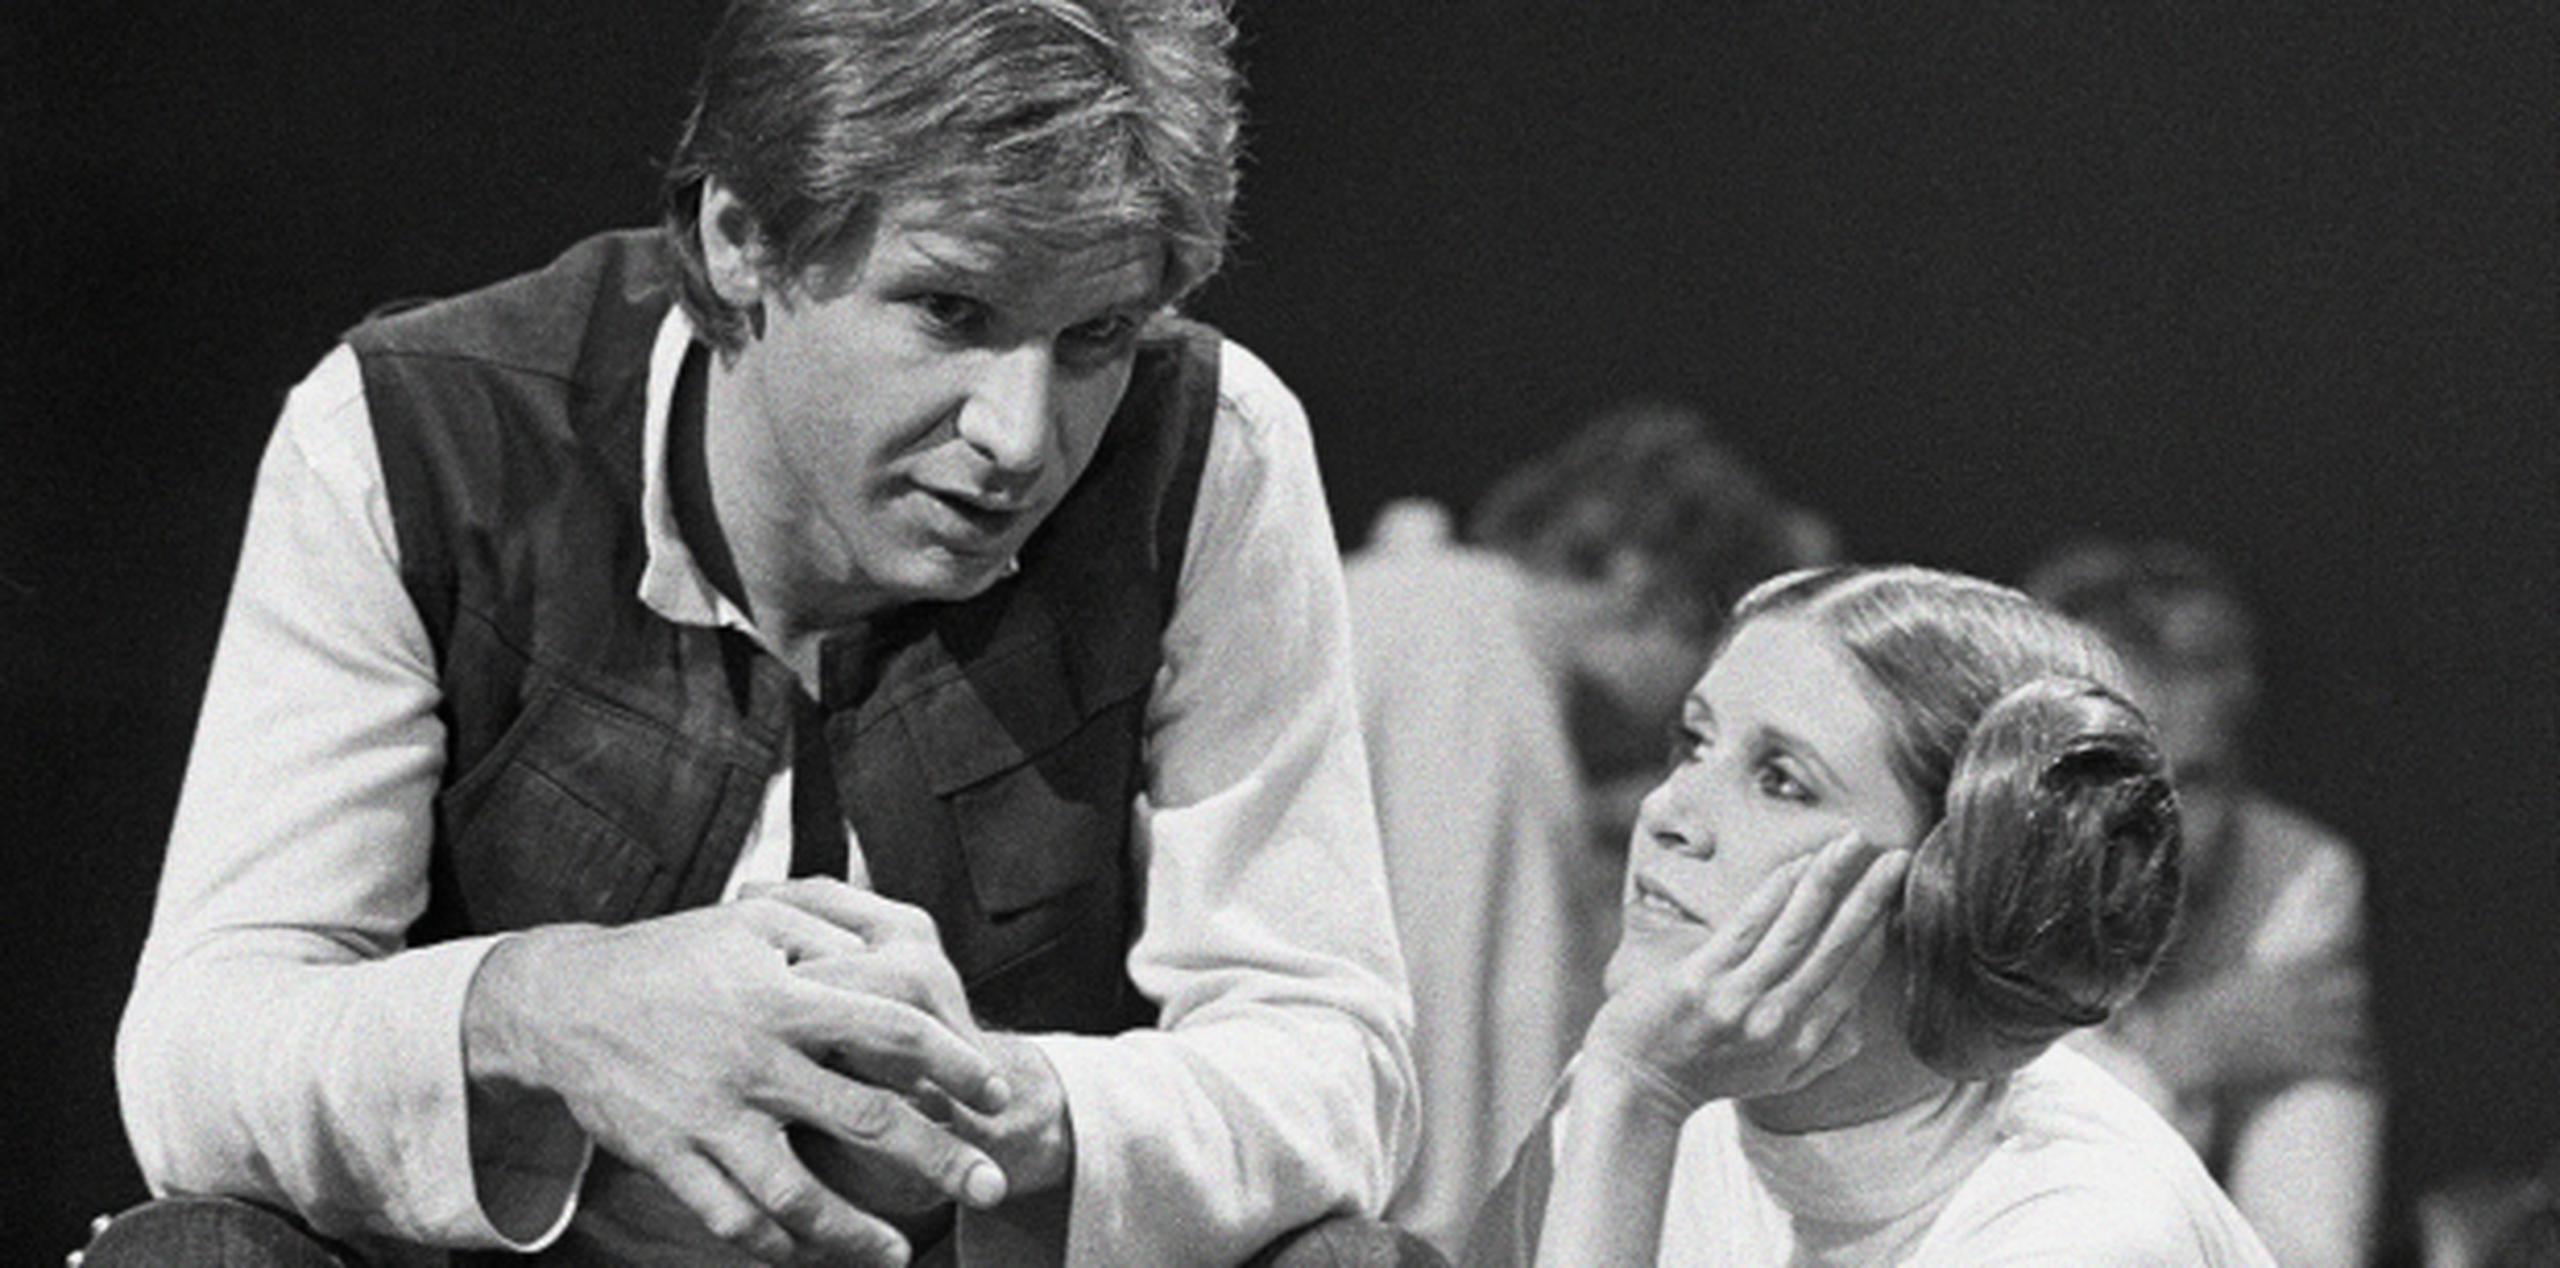 Las palabras de Harrison Ford se dan tan solo unos meses después de que Carrie Fisher haya revelado en su más reciente libro que "mantuvo un affaire" con el actor que dio vida a Han Solo. (Prensa Asociada)